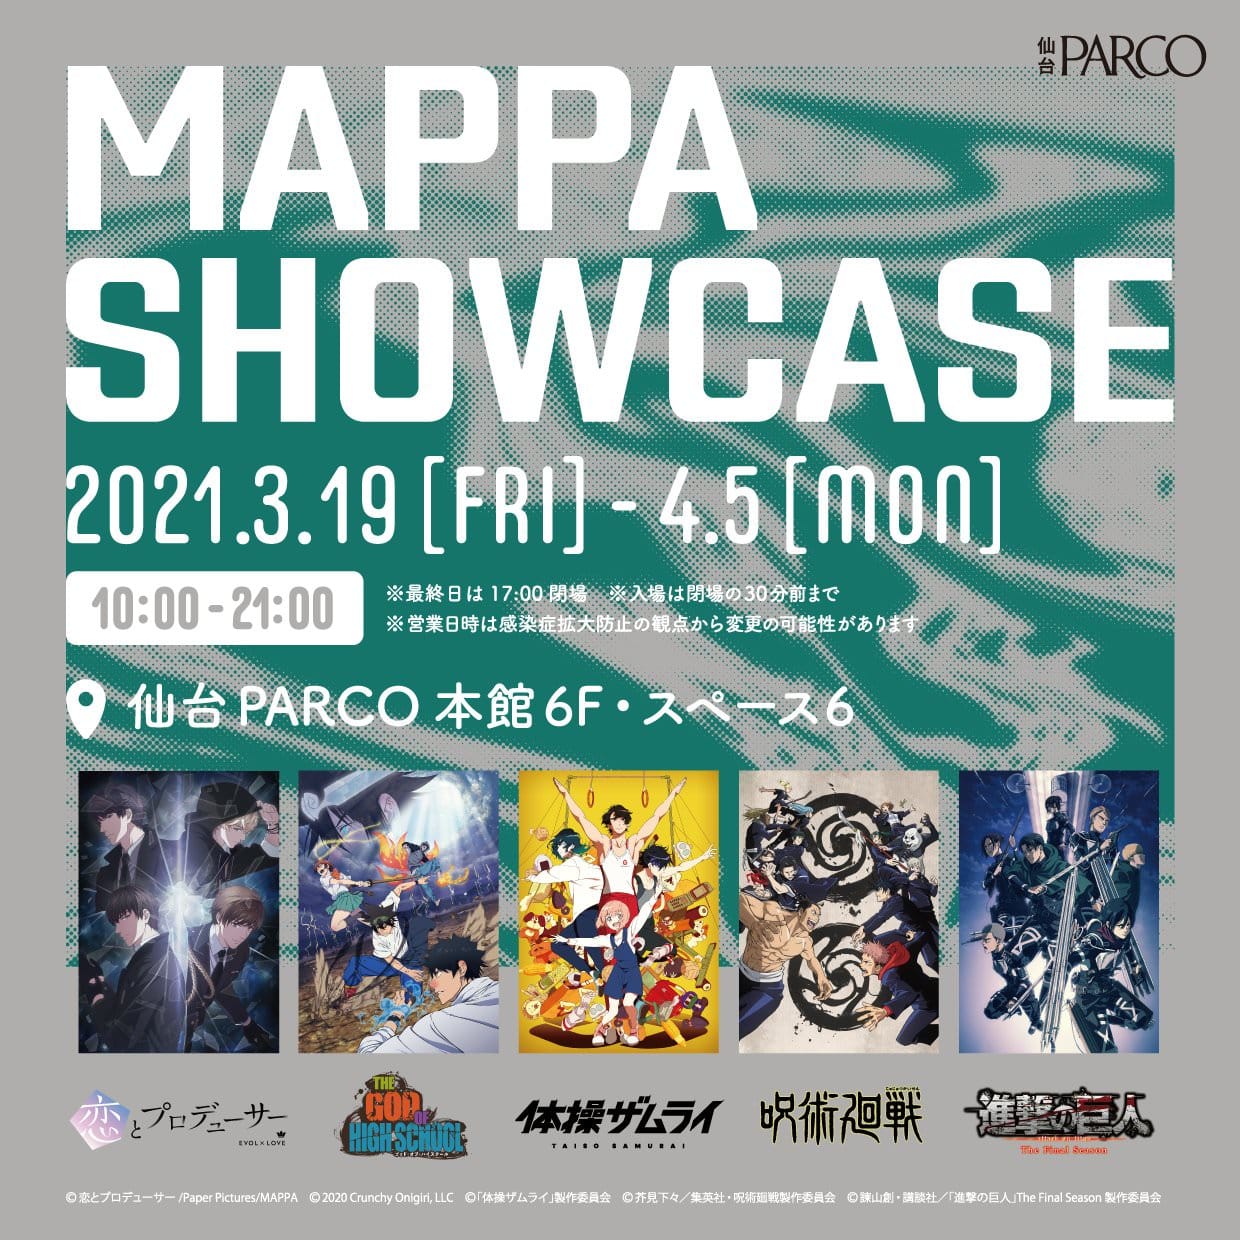 MAPPA SHOWCASE in 仙台パルコ 2021.4.5まで企画展開催中!!